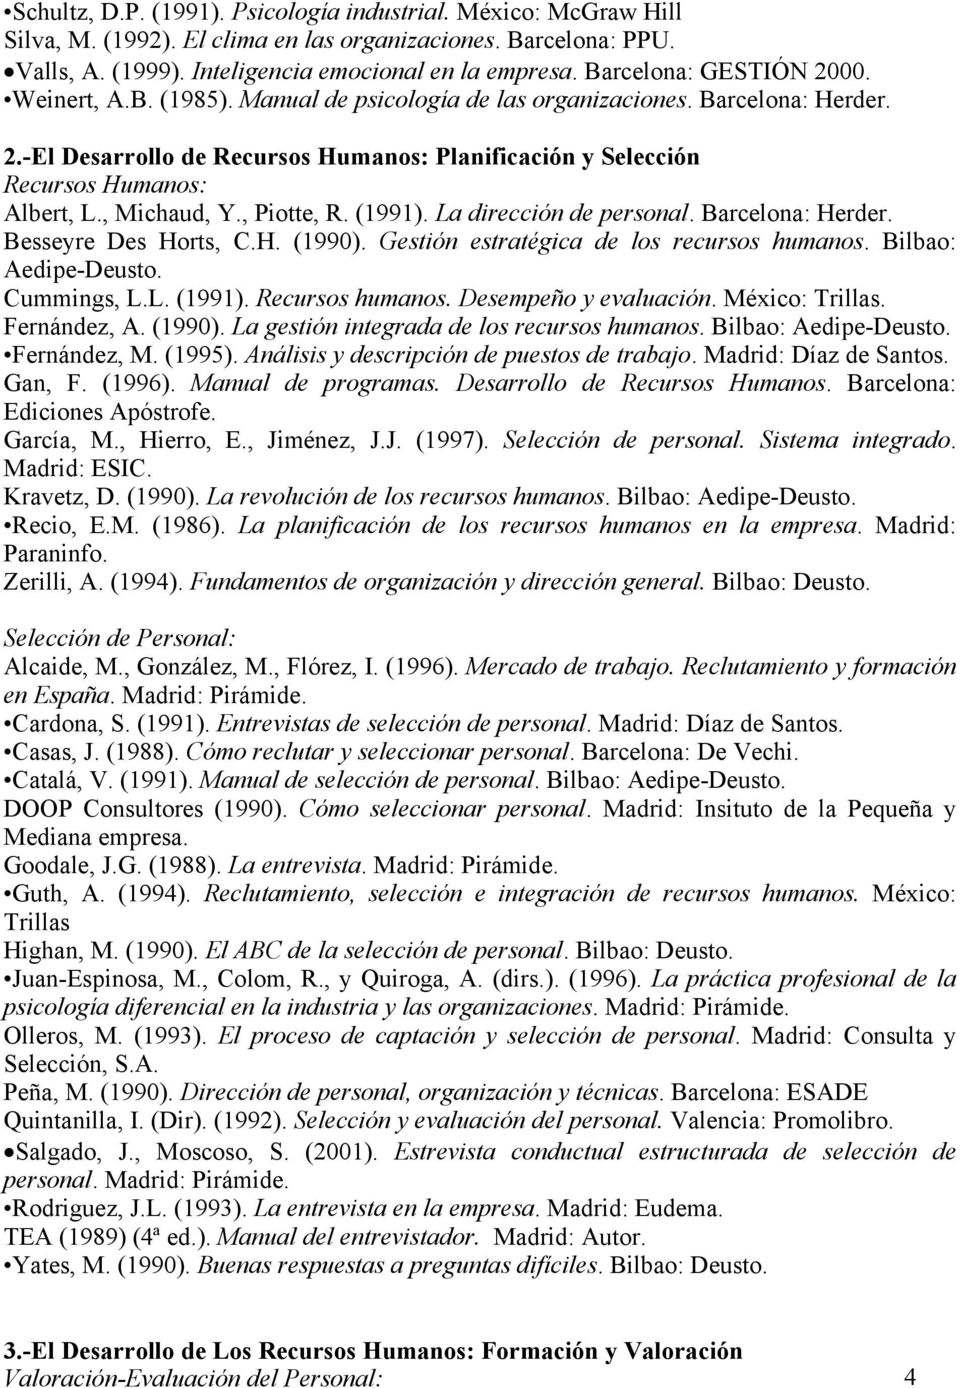 , Michaud, Y., Piotte, R. (1991). La dirección de personal. Barcelona: Herder. Besseyre Des Horts, C.H. (1990). Gestión estratégica de los recursos humanos. Bilbao: Aedipe-Deusto. Cummings, L.L. (1991). Recursos humanos.